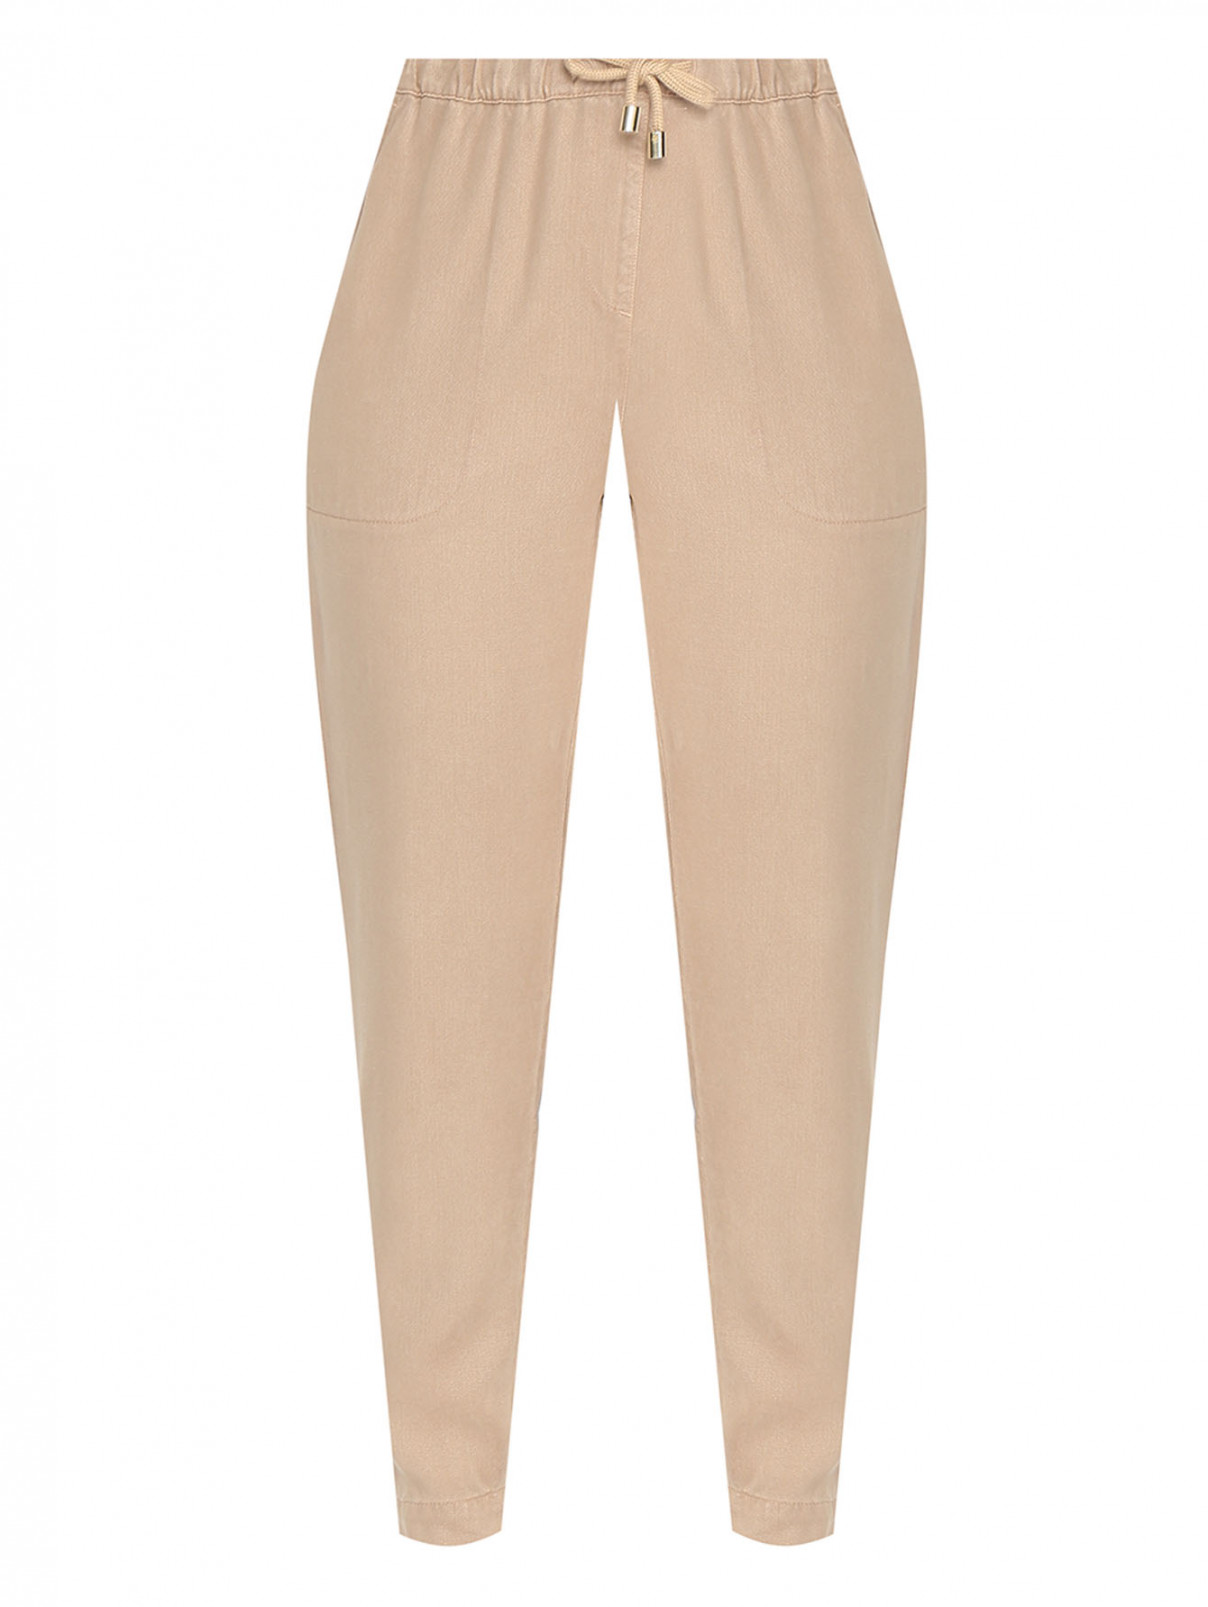 Однотонные брюки на резинке с карманами Marina Rinaldi  –  Общий вид  – Цвет:  Бежевый